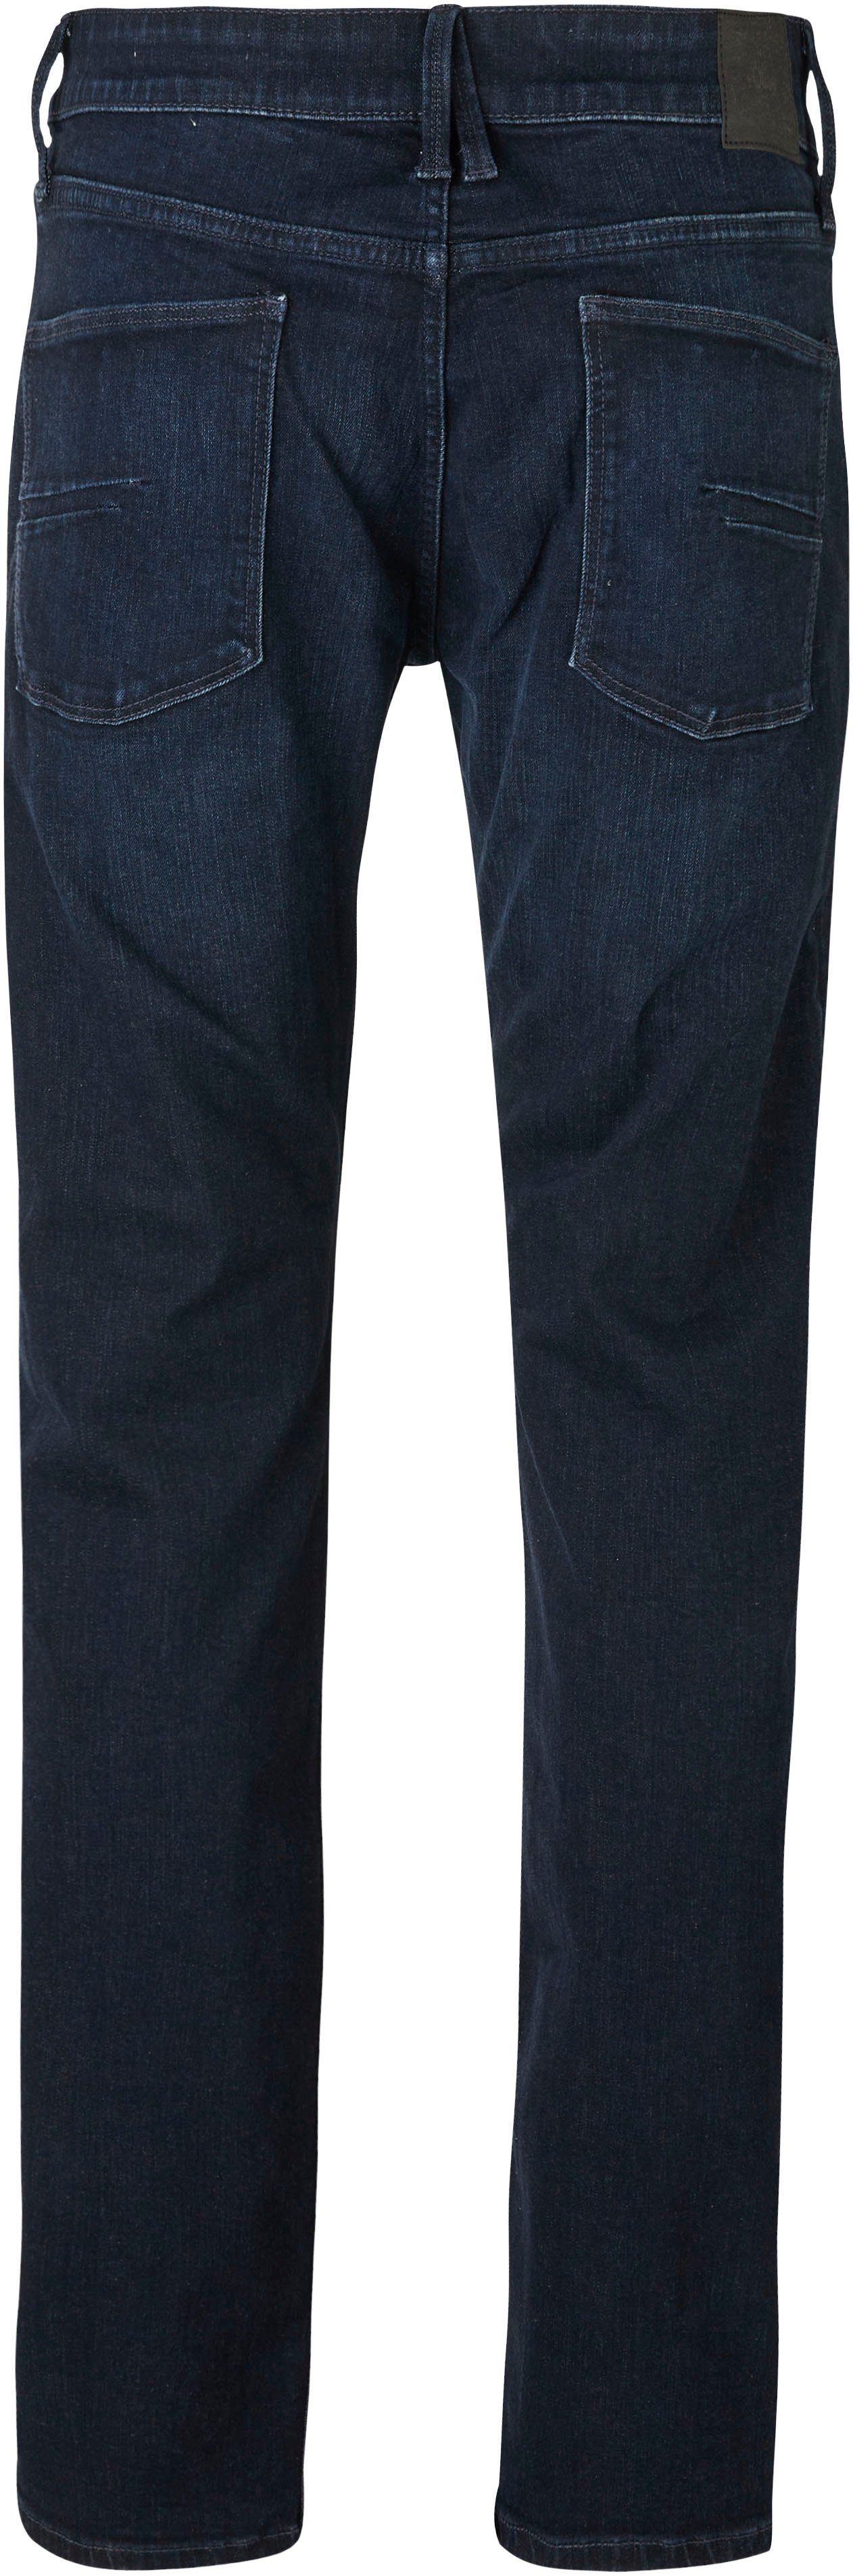 Jeans und Bequeme blue s.Oliver Gesäß- Eingrifftaschen 32 dark mit